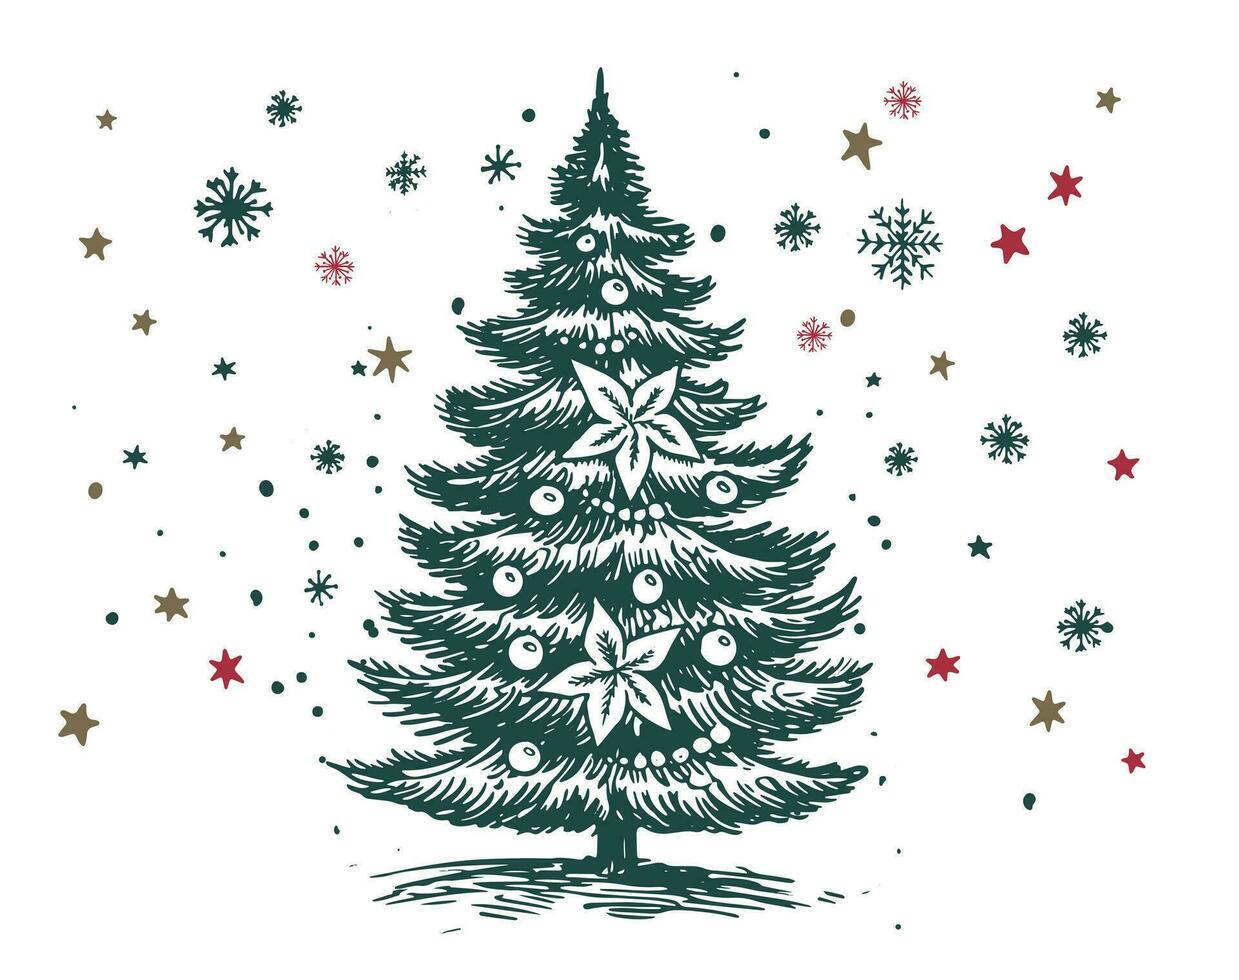 Navidad árbol conjunto mano dibujado ilustración vector